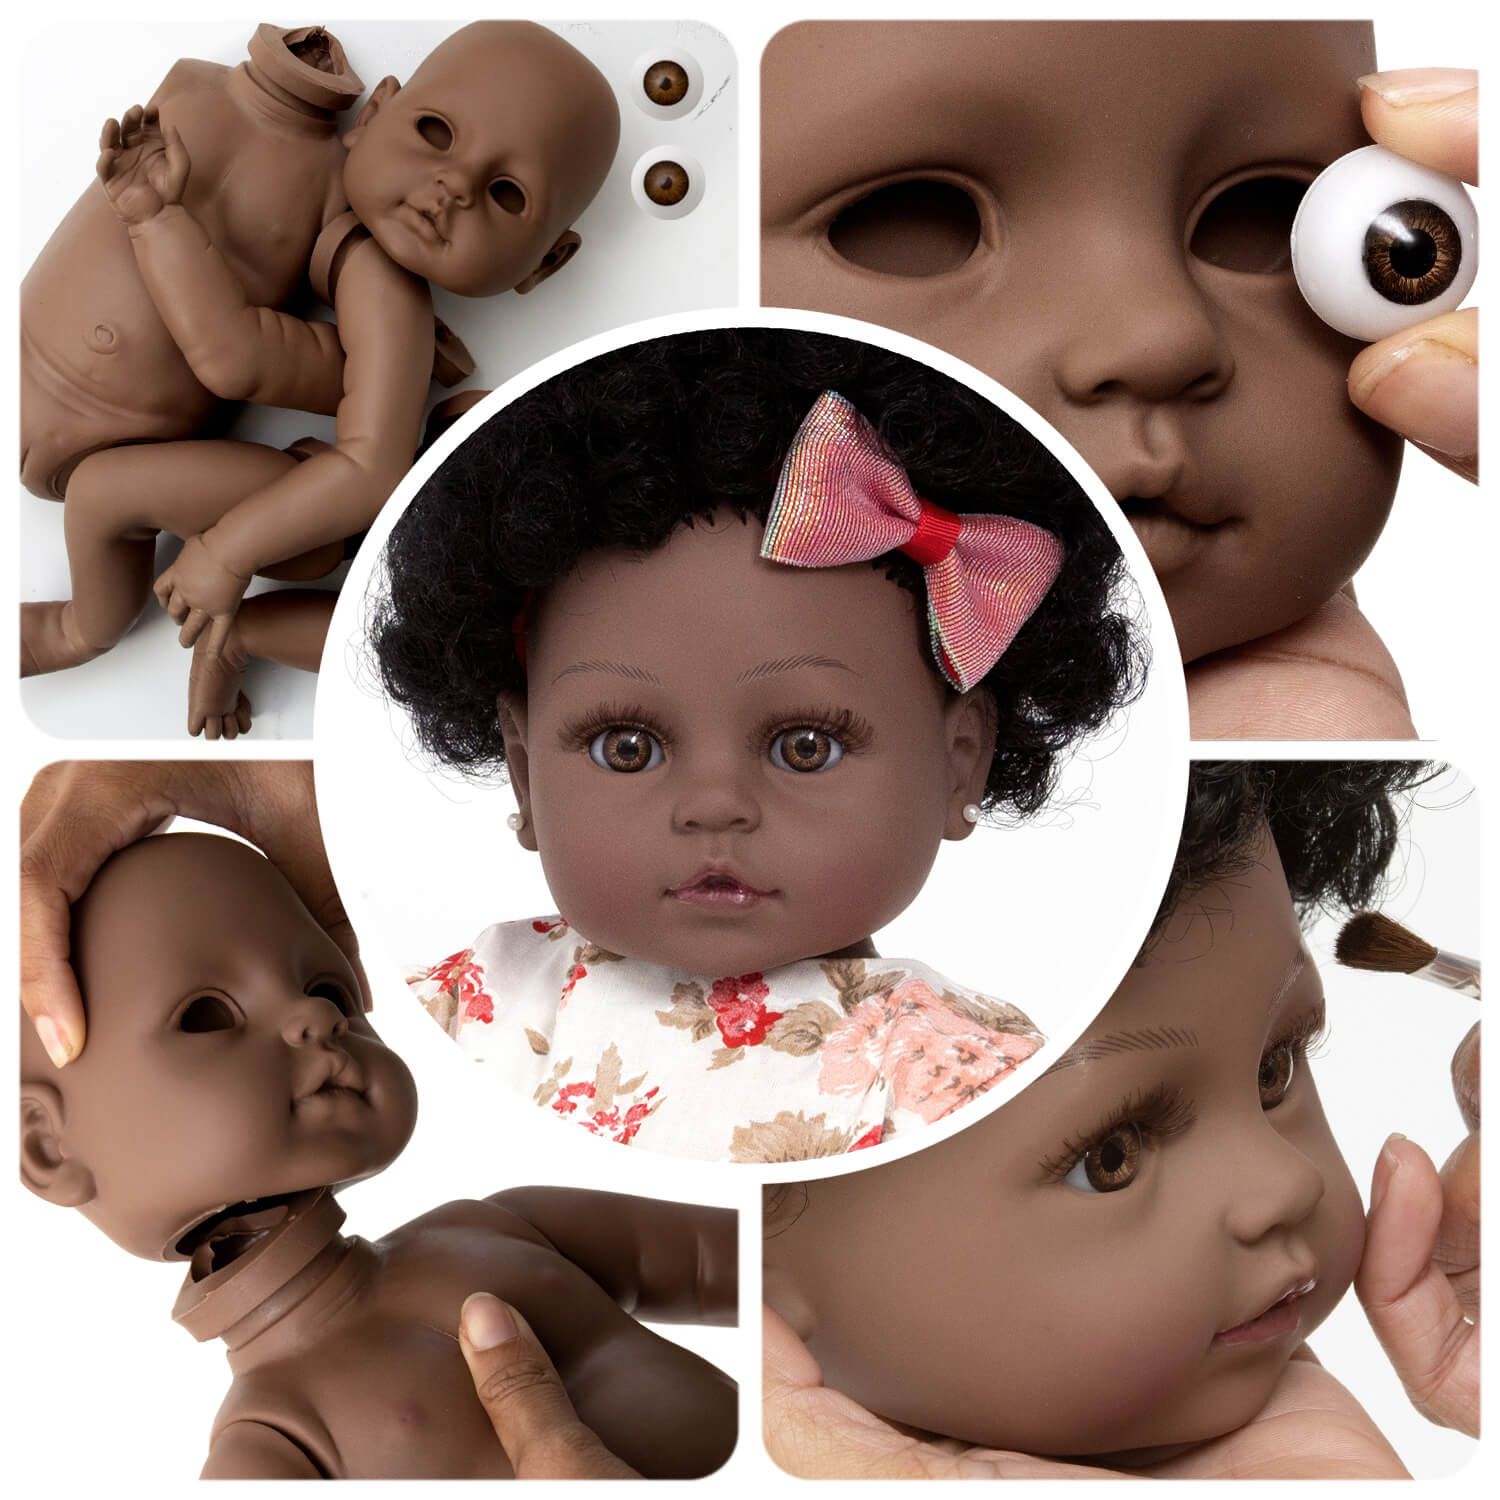 Boneca Bebê Reborn Realista Menina Girafinha com 15 Itens - Chic Outlet -  Economize com estilo!